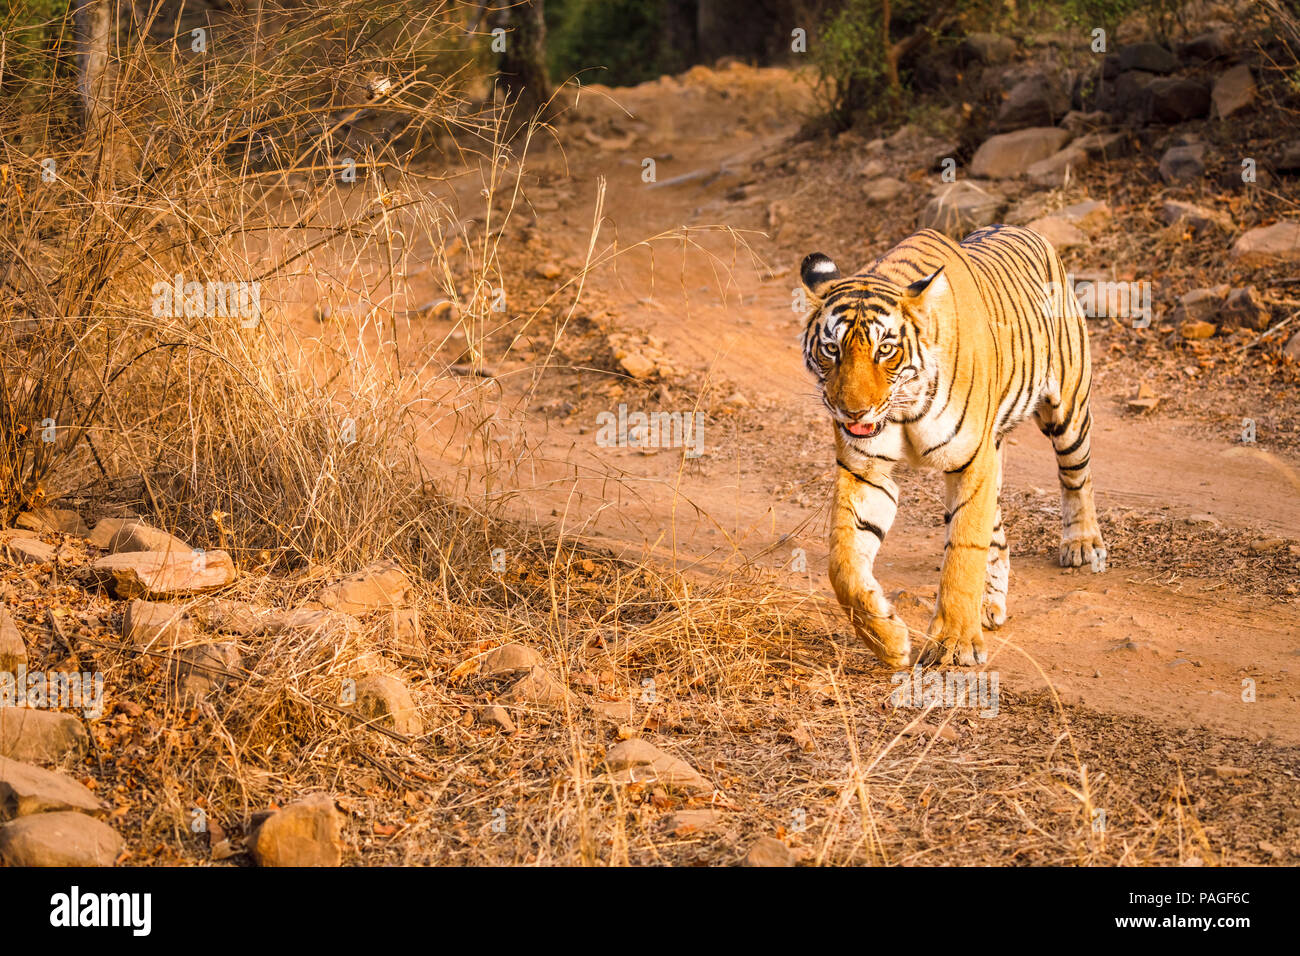 Weibliche Bengal Tiger (Panthera tigris) entlang einer Spur überqueren der Straße, Ranthambore Nationalpark, Rajasthan, Nordindien, trockene Jahreszeit Stockfoto